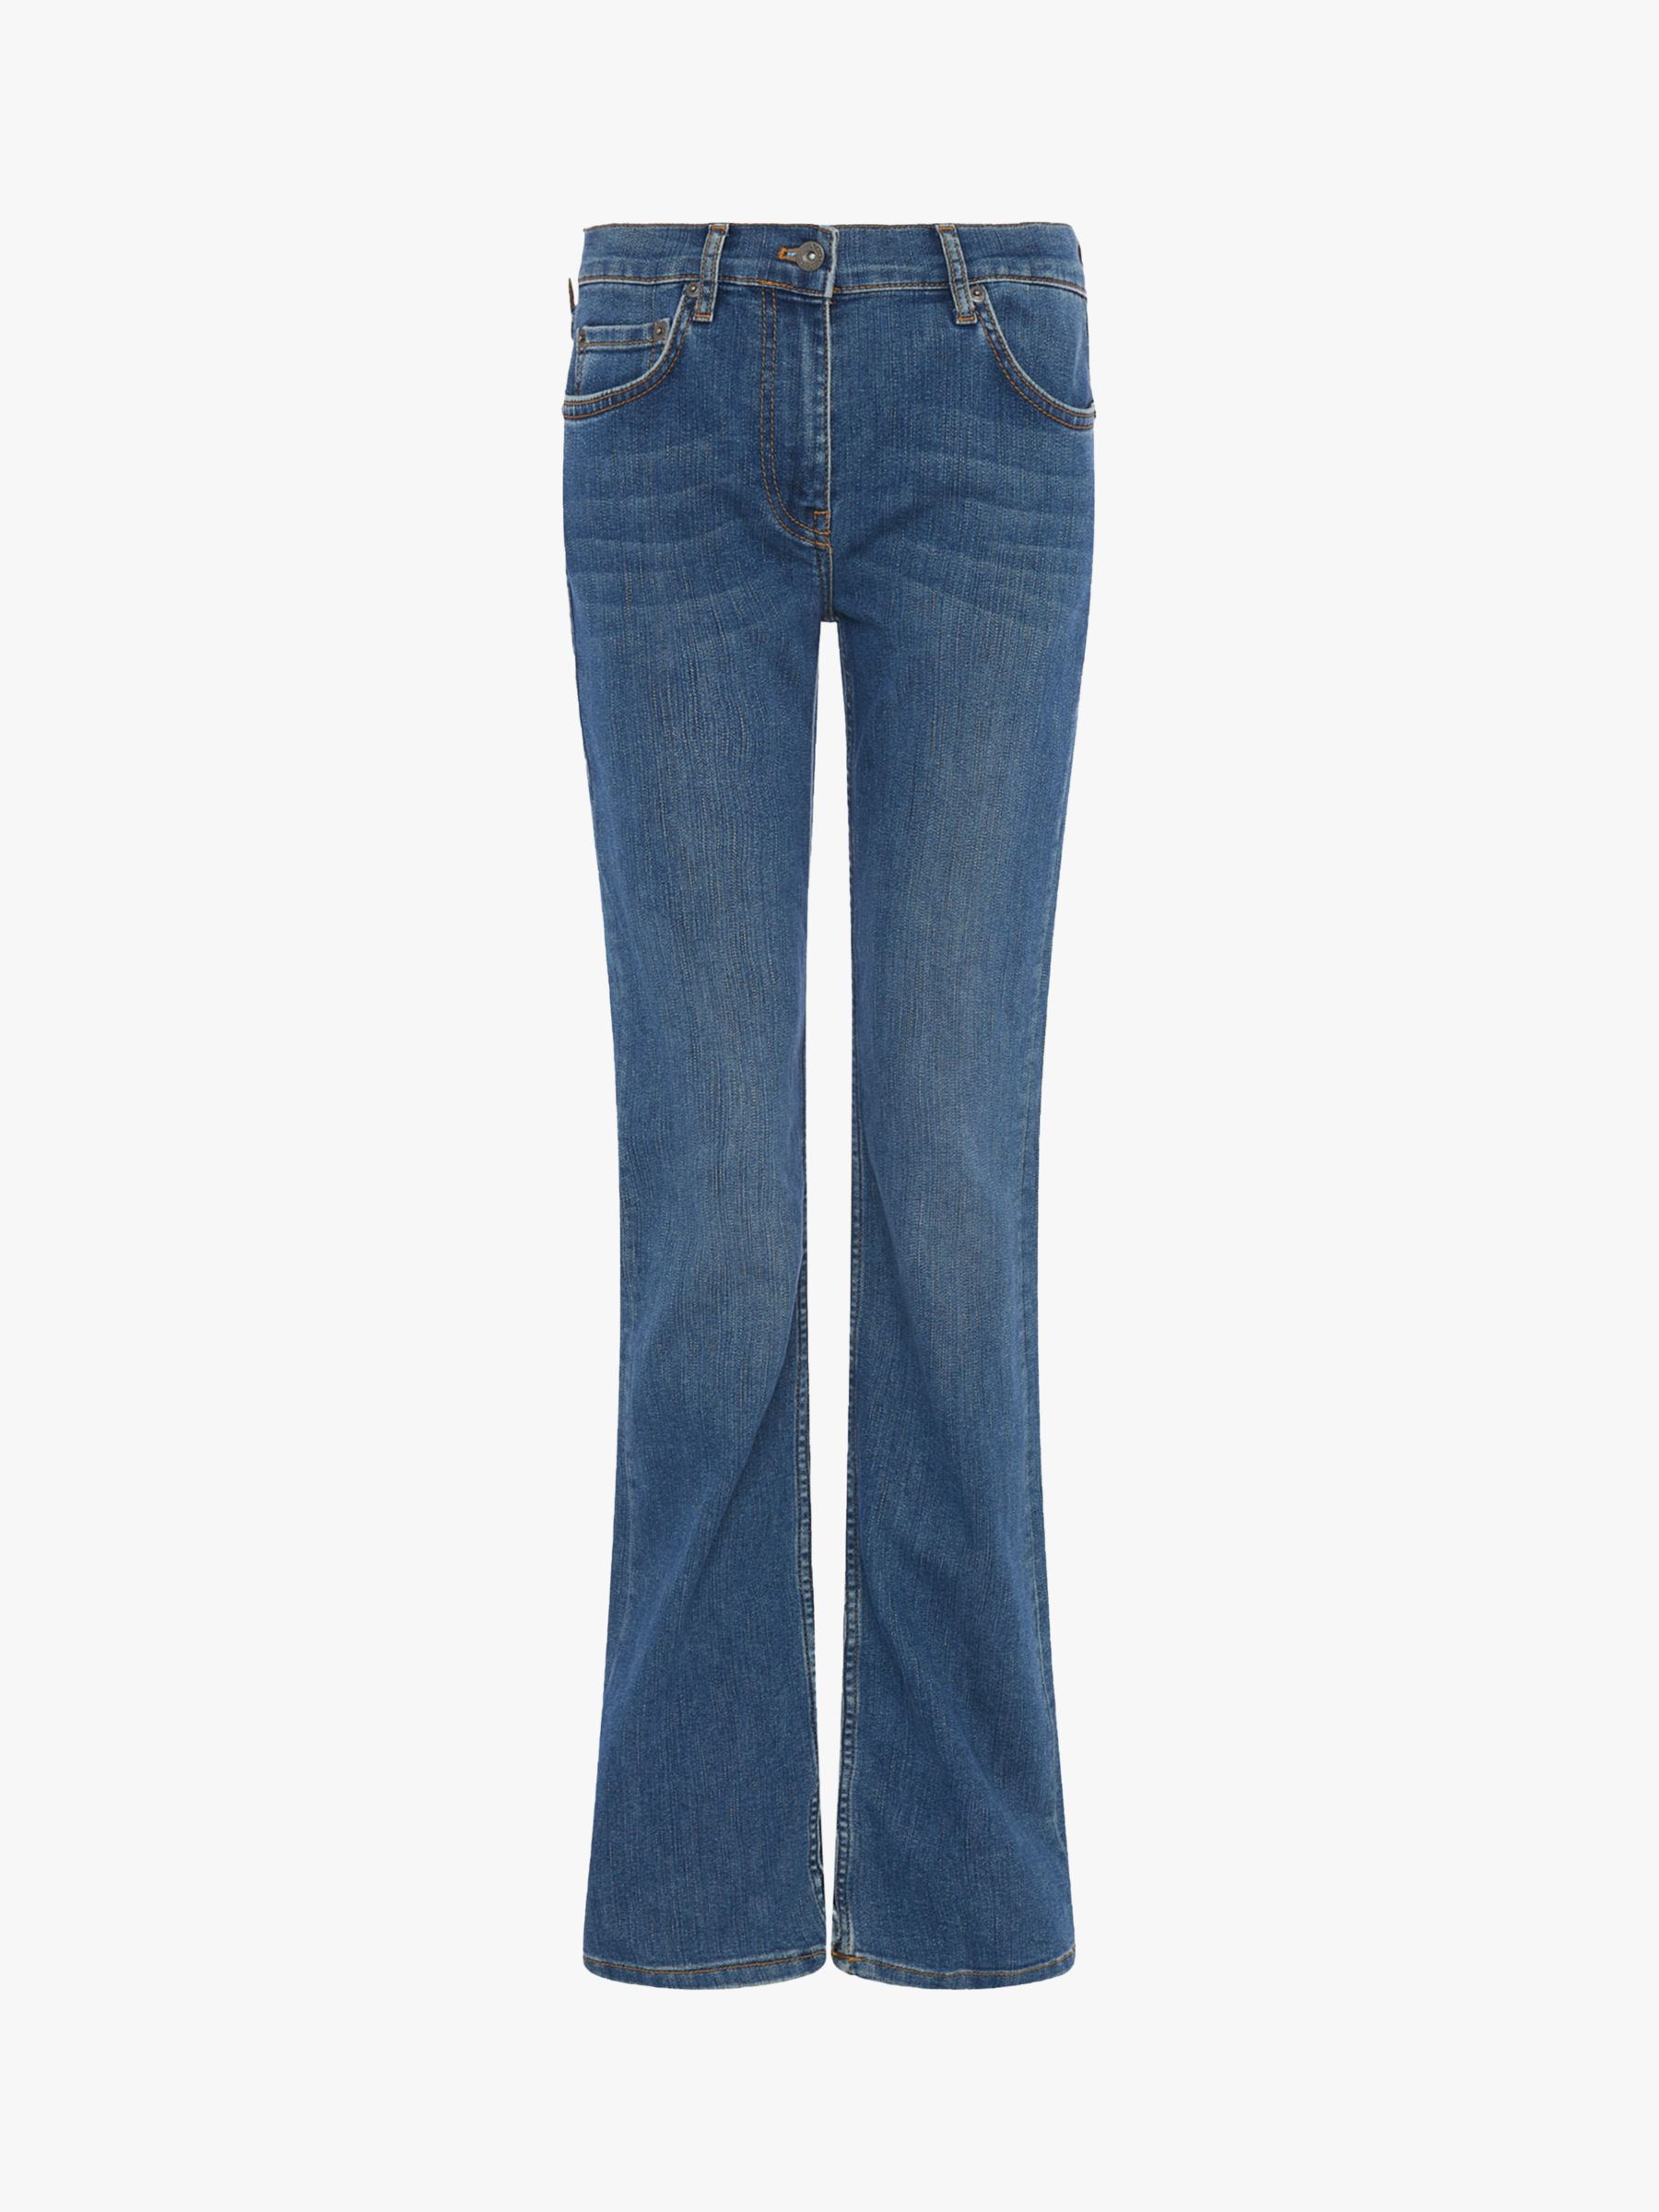 Great Plains Classic Bootcut Jeans, Vintage Wash, 8